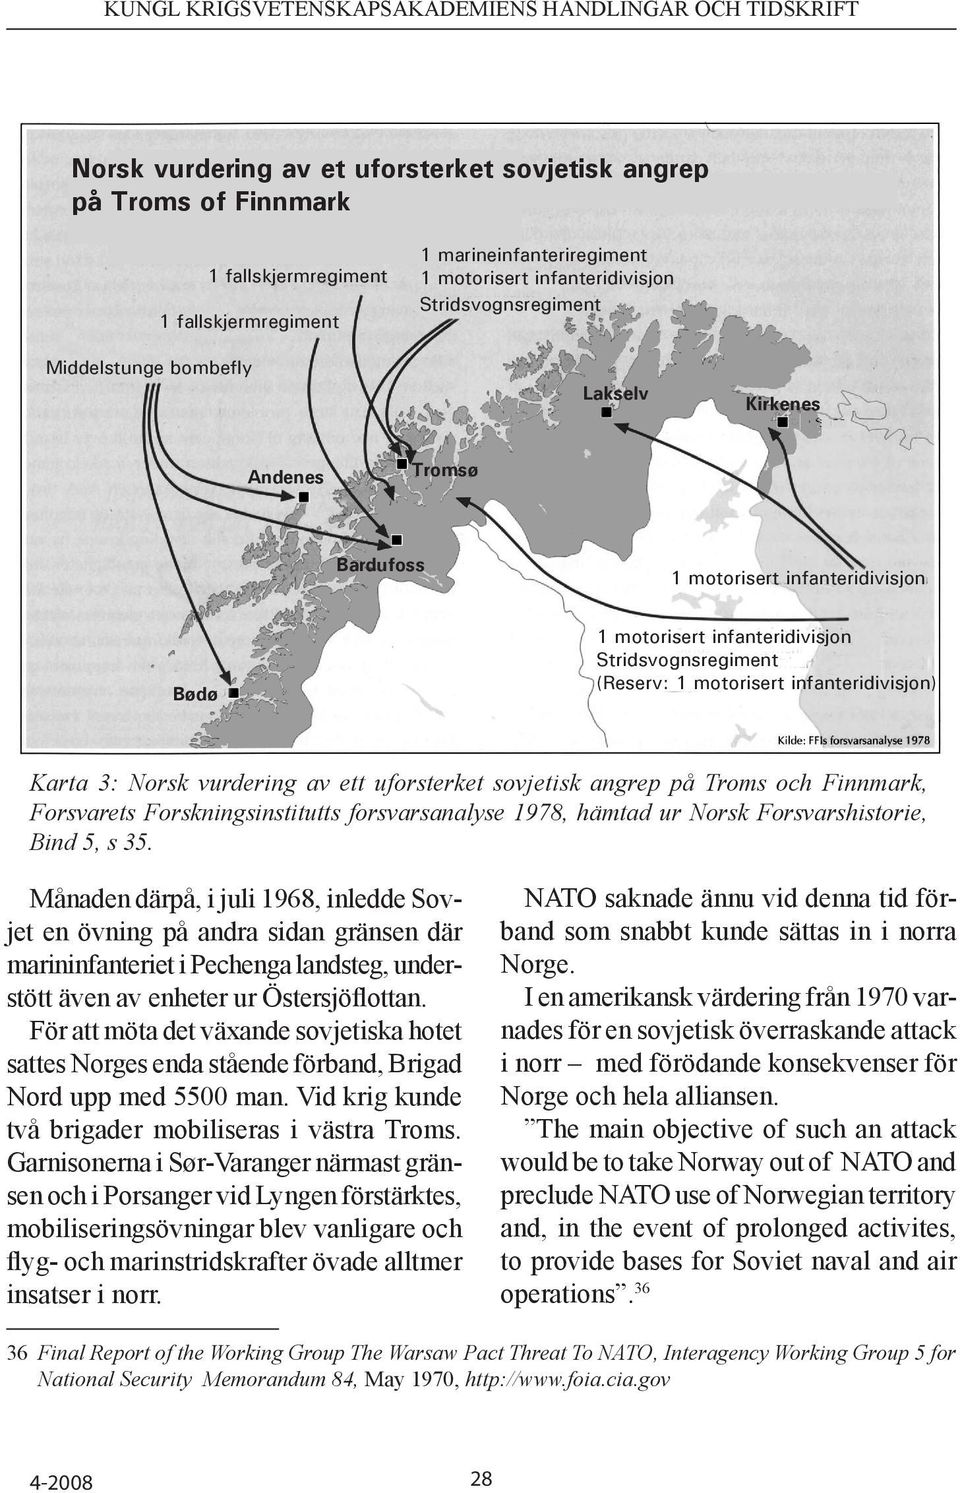 Norsk vurdering av ett uforsterket sovjetisk angrep på Troms och Finnmark, Forsvarets Forskningsinstitutts forsvarsanalyse 1978, hämtad ur Norsk Forsvarshistorie, Bind 5, s 35.